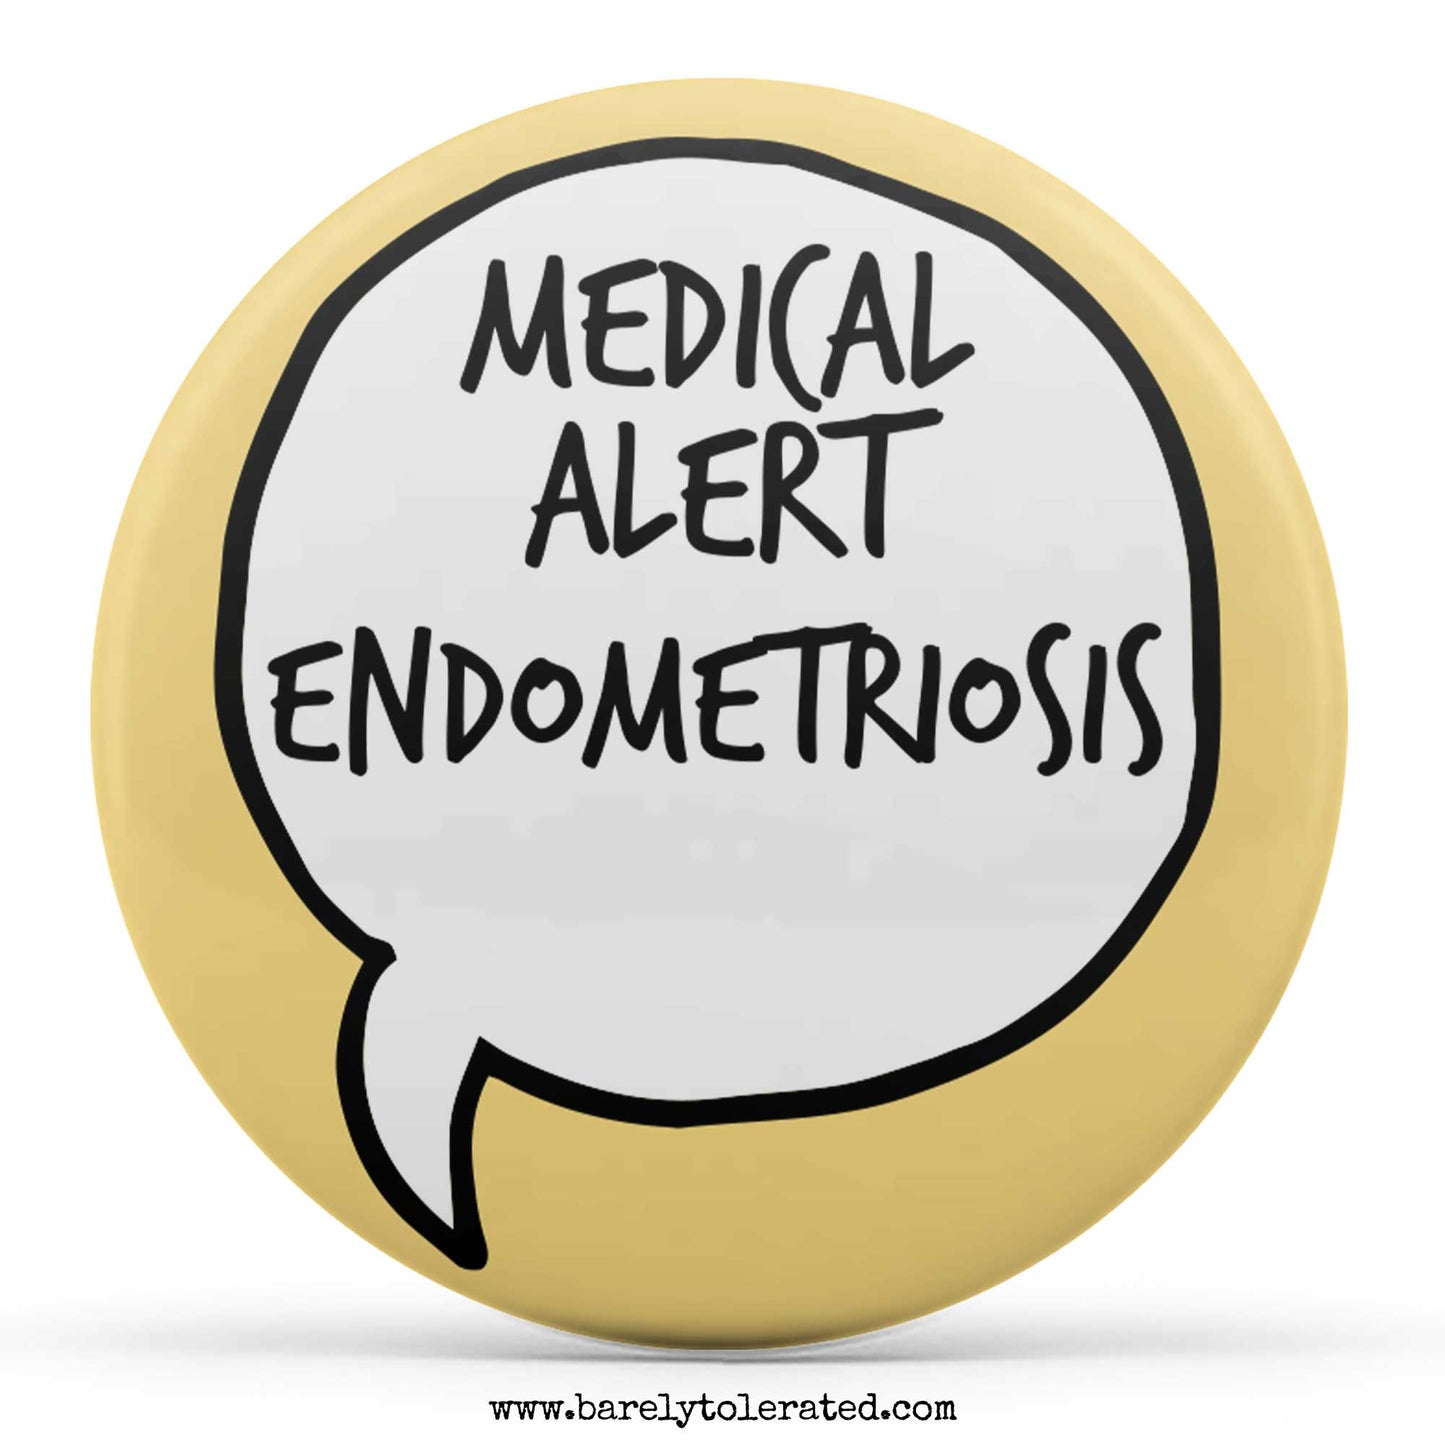 Medical Alert Endometriosis